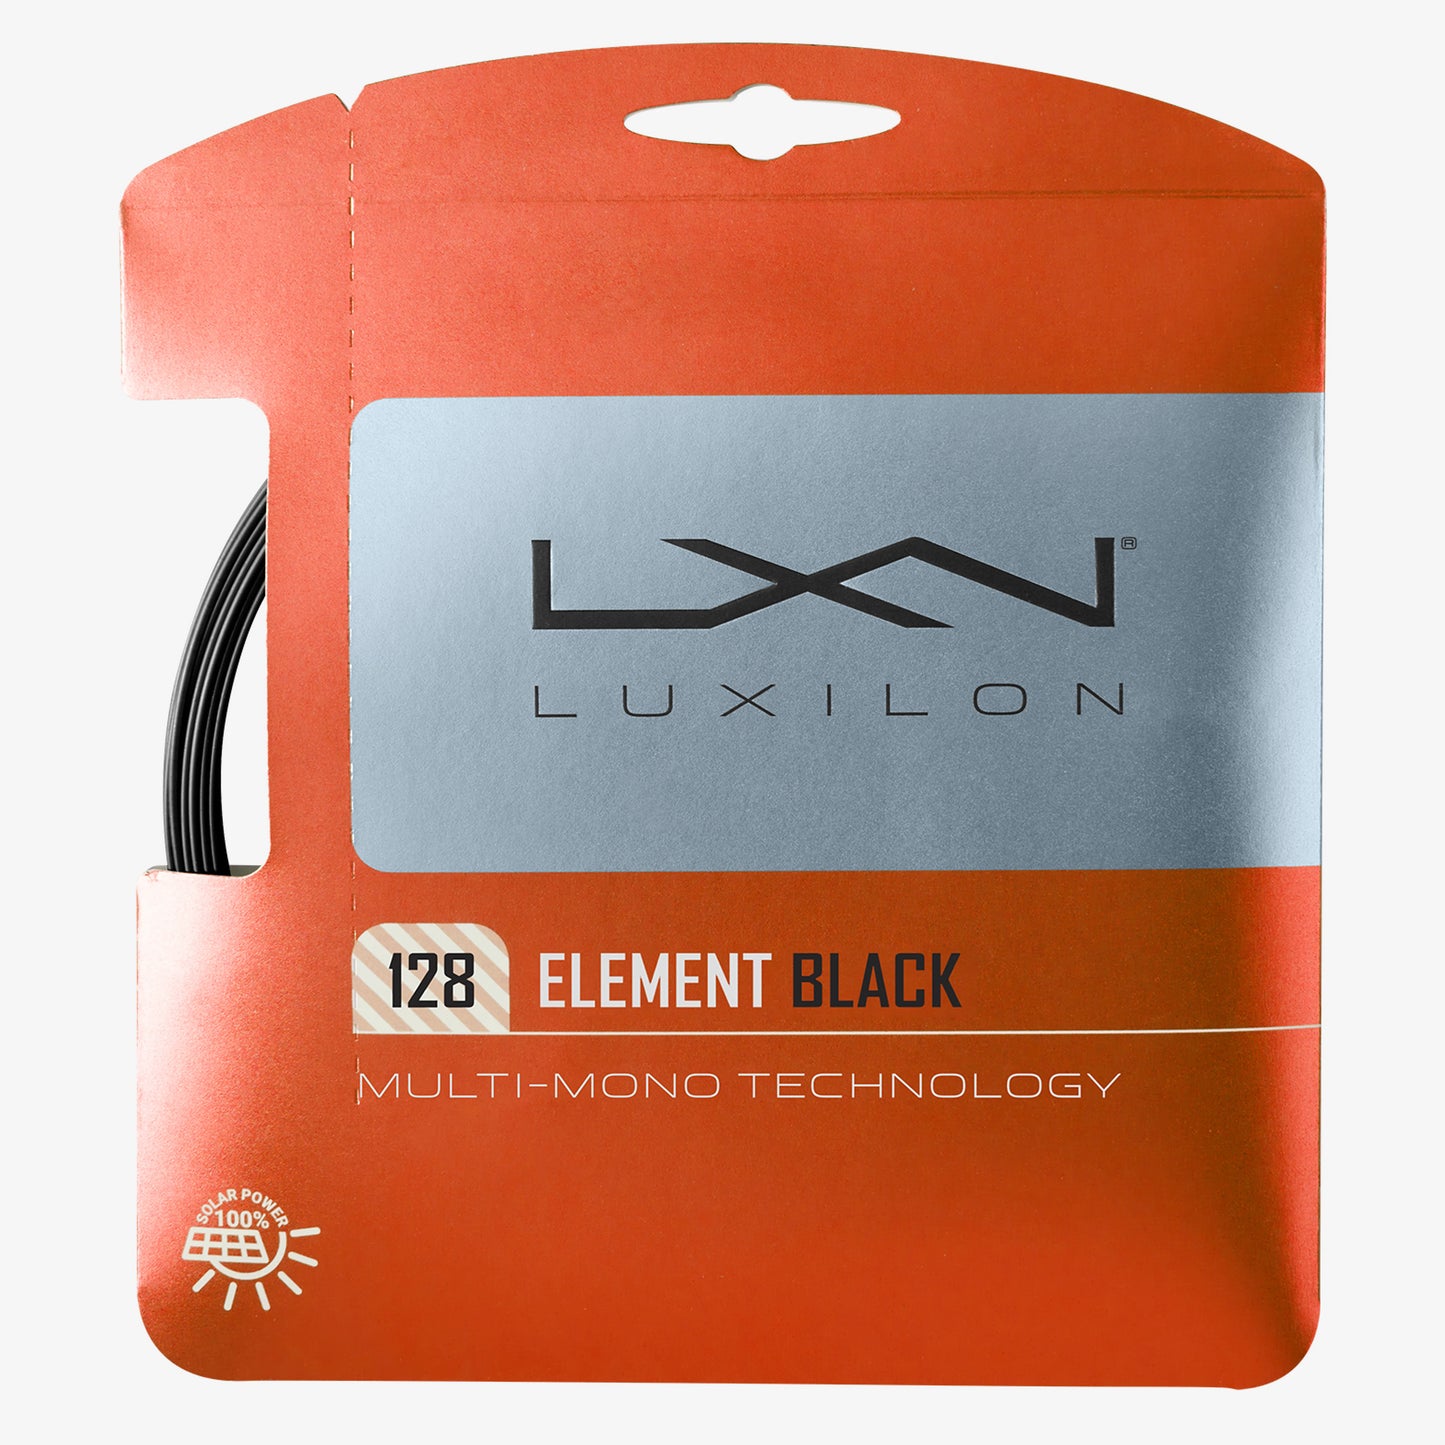 Luxilon Element 12m/40ft